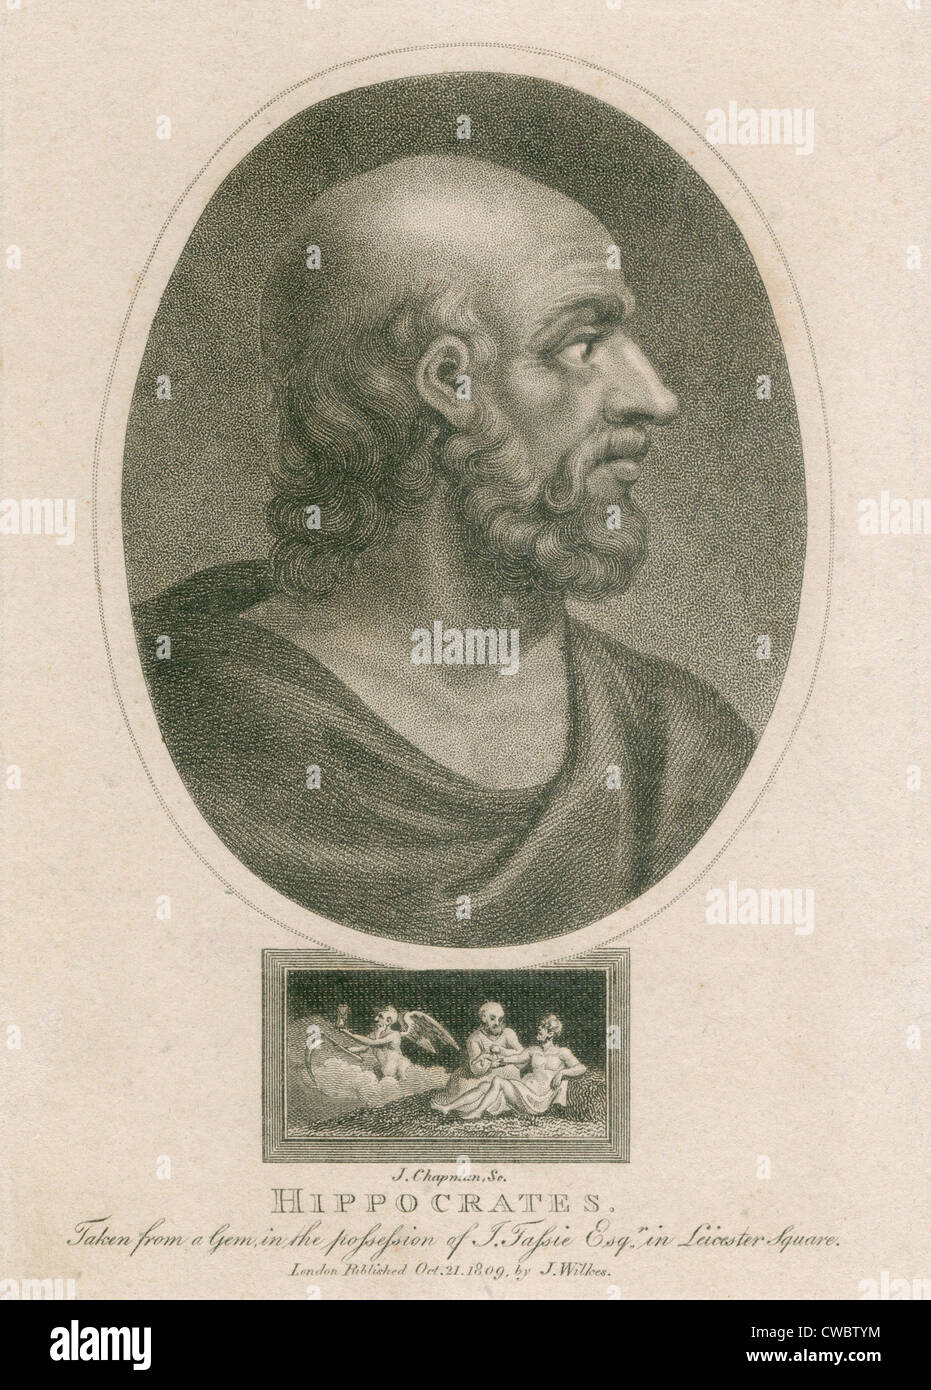 Hippocrate (460-375 avant J.-C.). Gravure d'une pierre ancienne. Ca. 1800 par J. Chapman. Banque D'Images